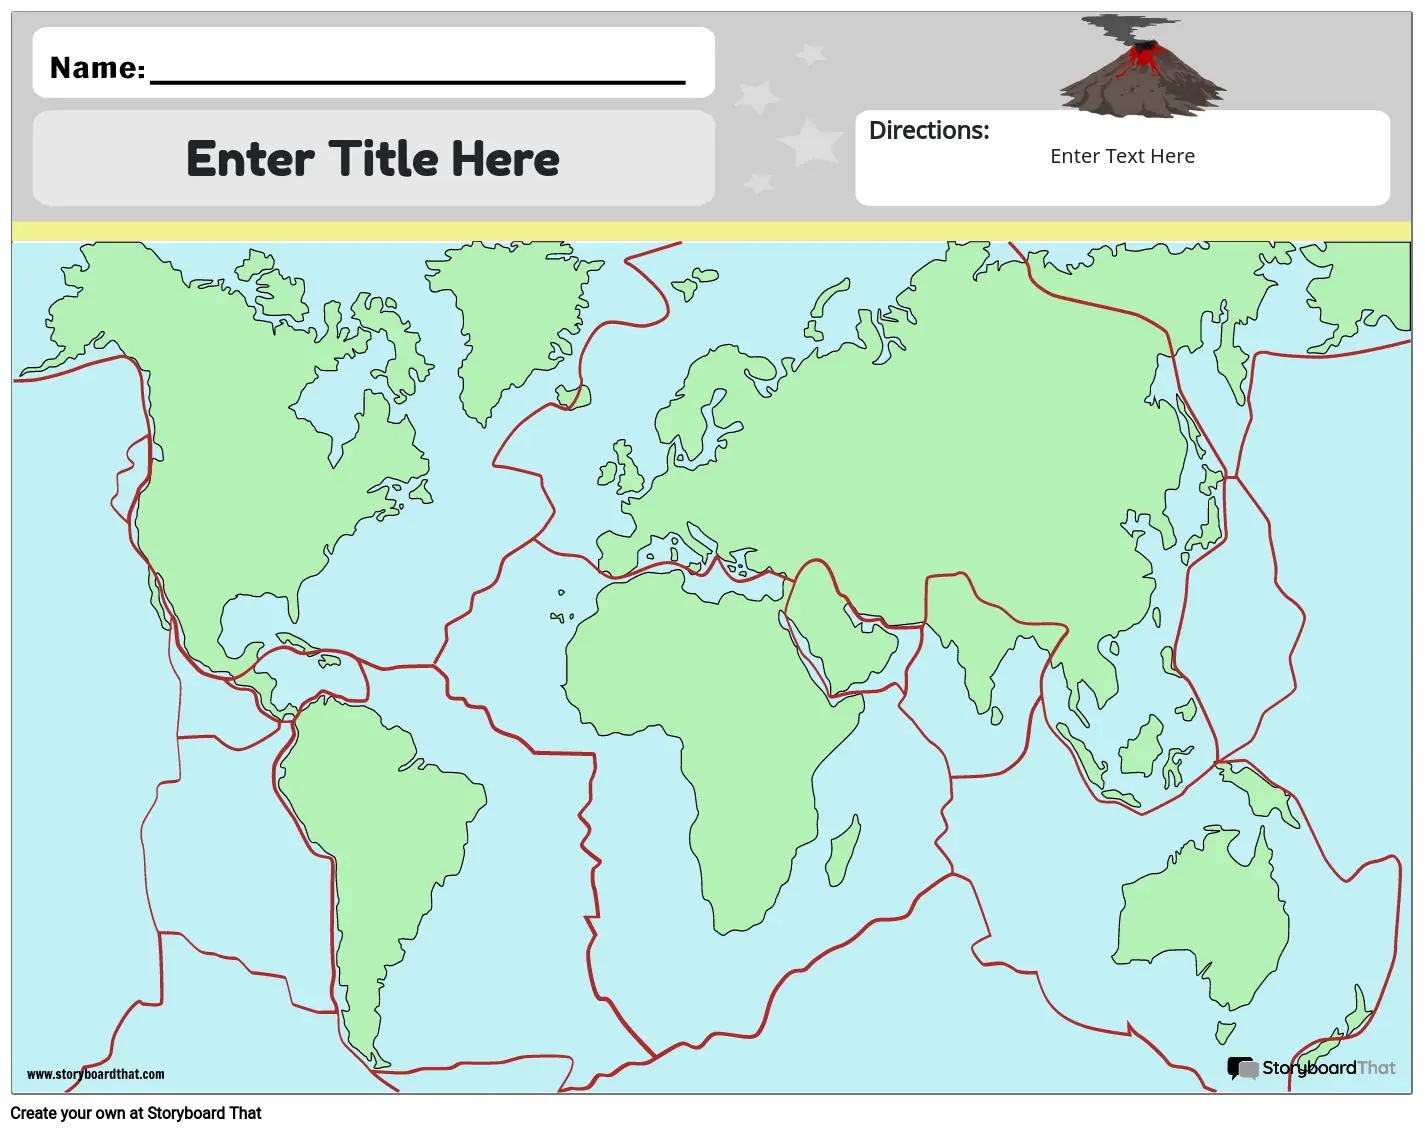 Carte des Plaques Tectoniques